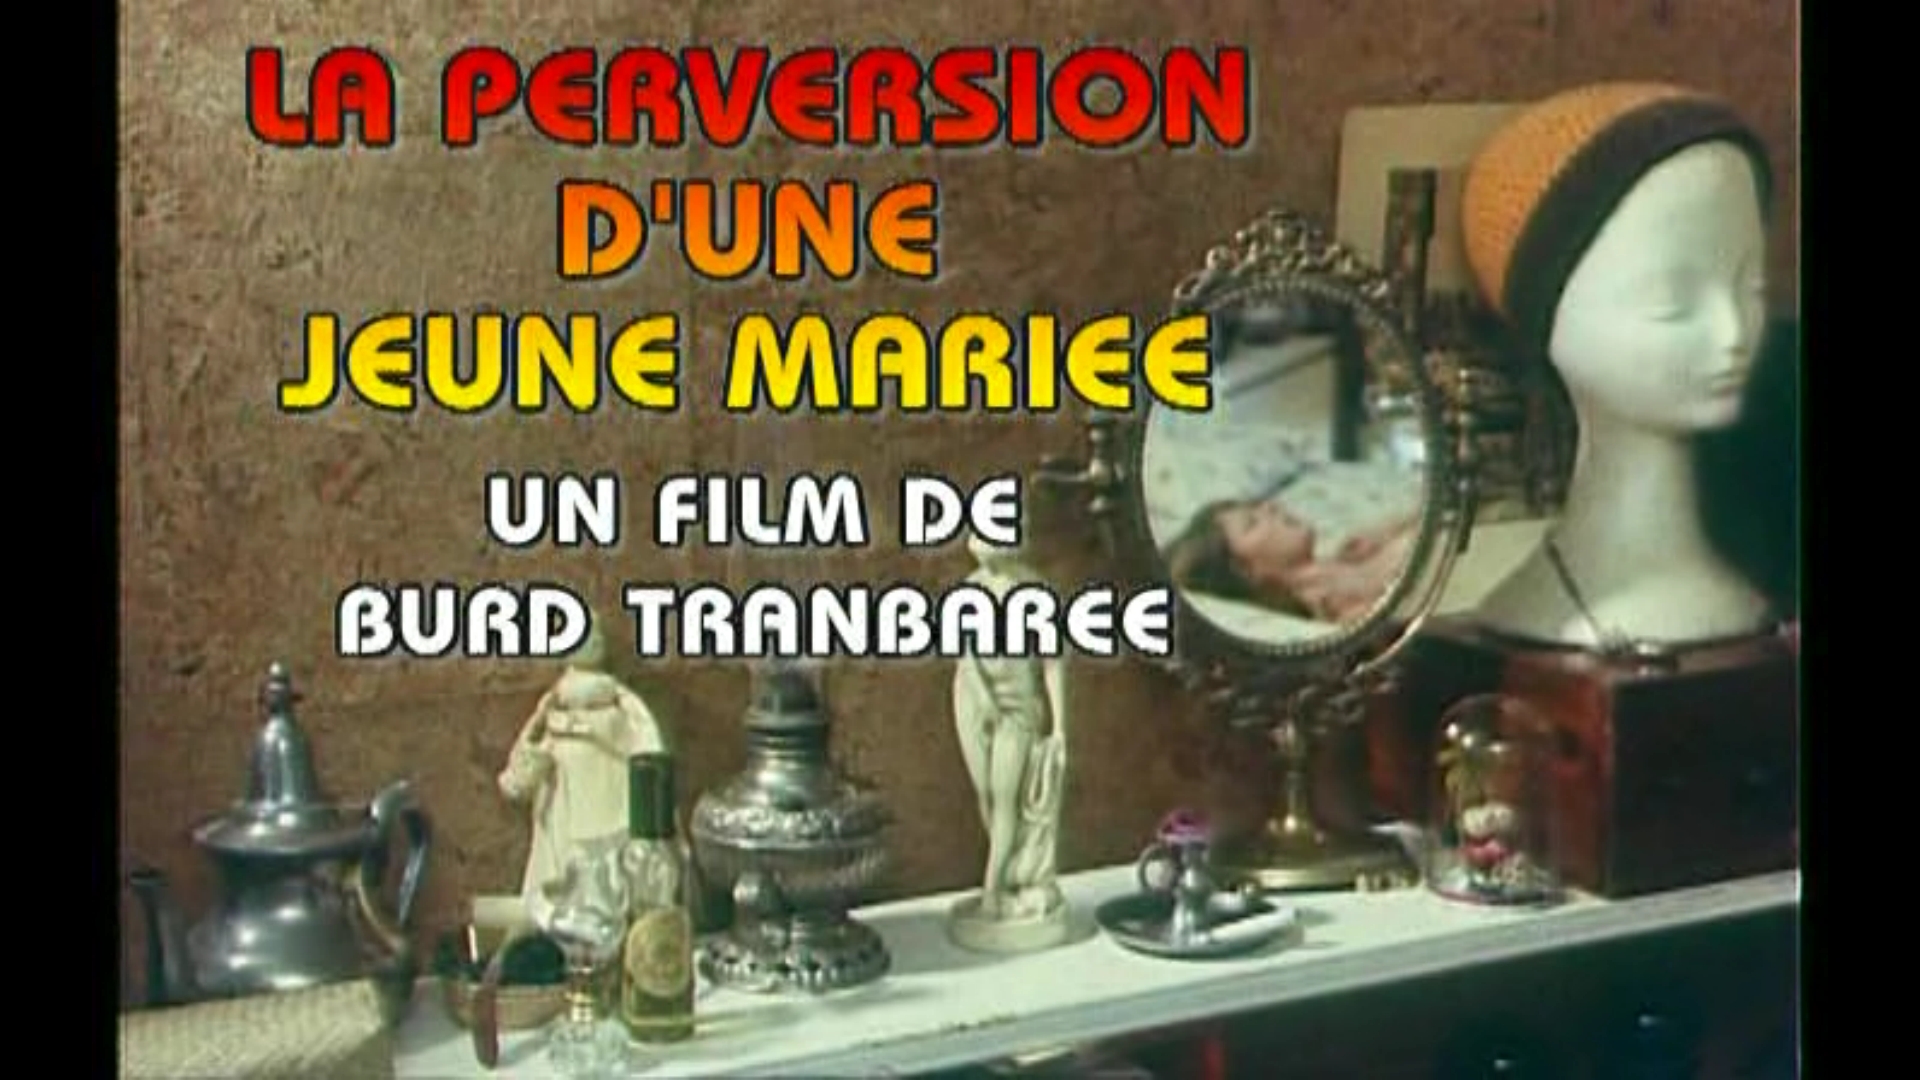 La Perversion d'une jeune mariée 1977 film scene di nudo